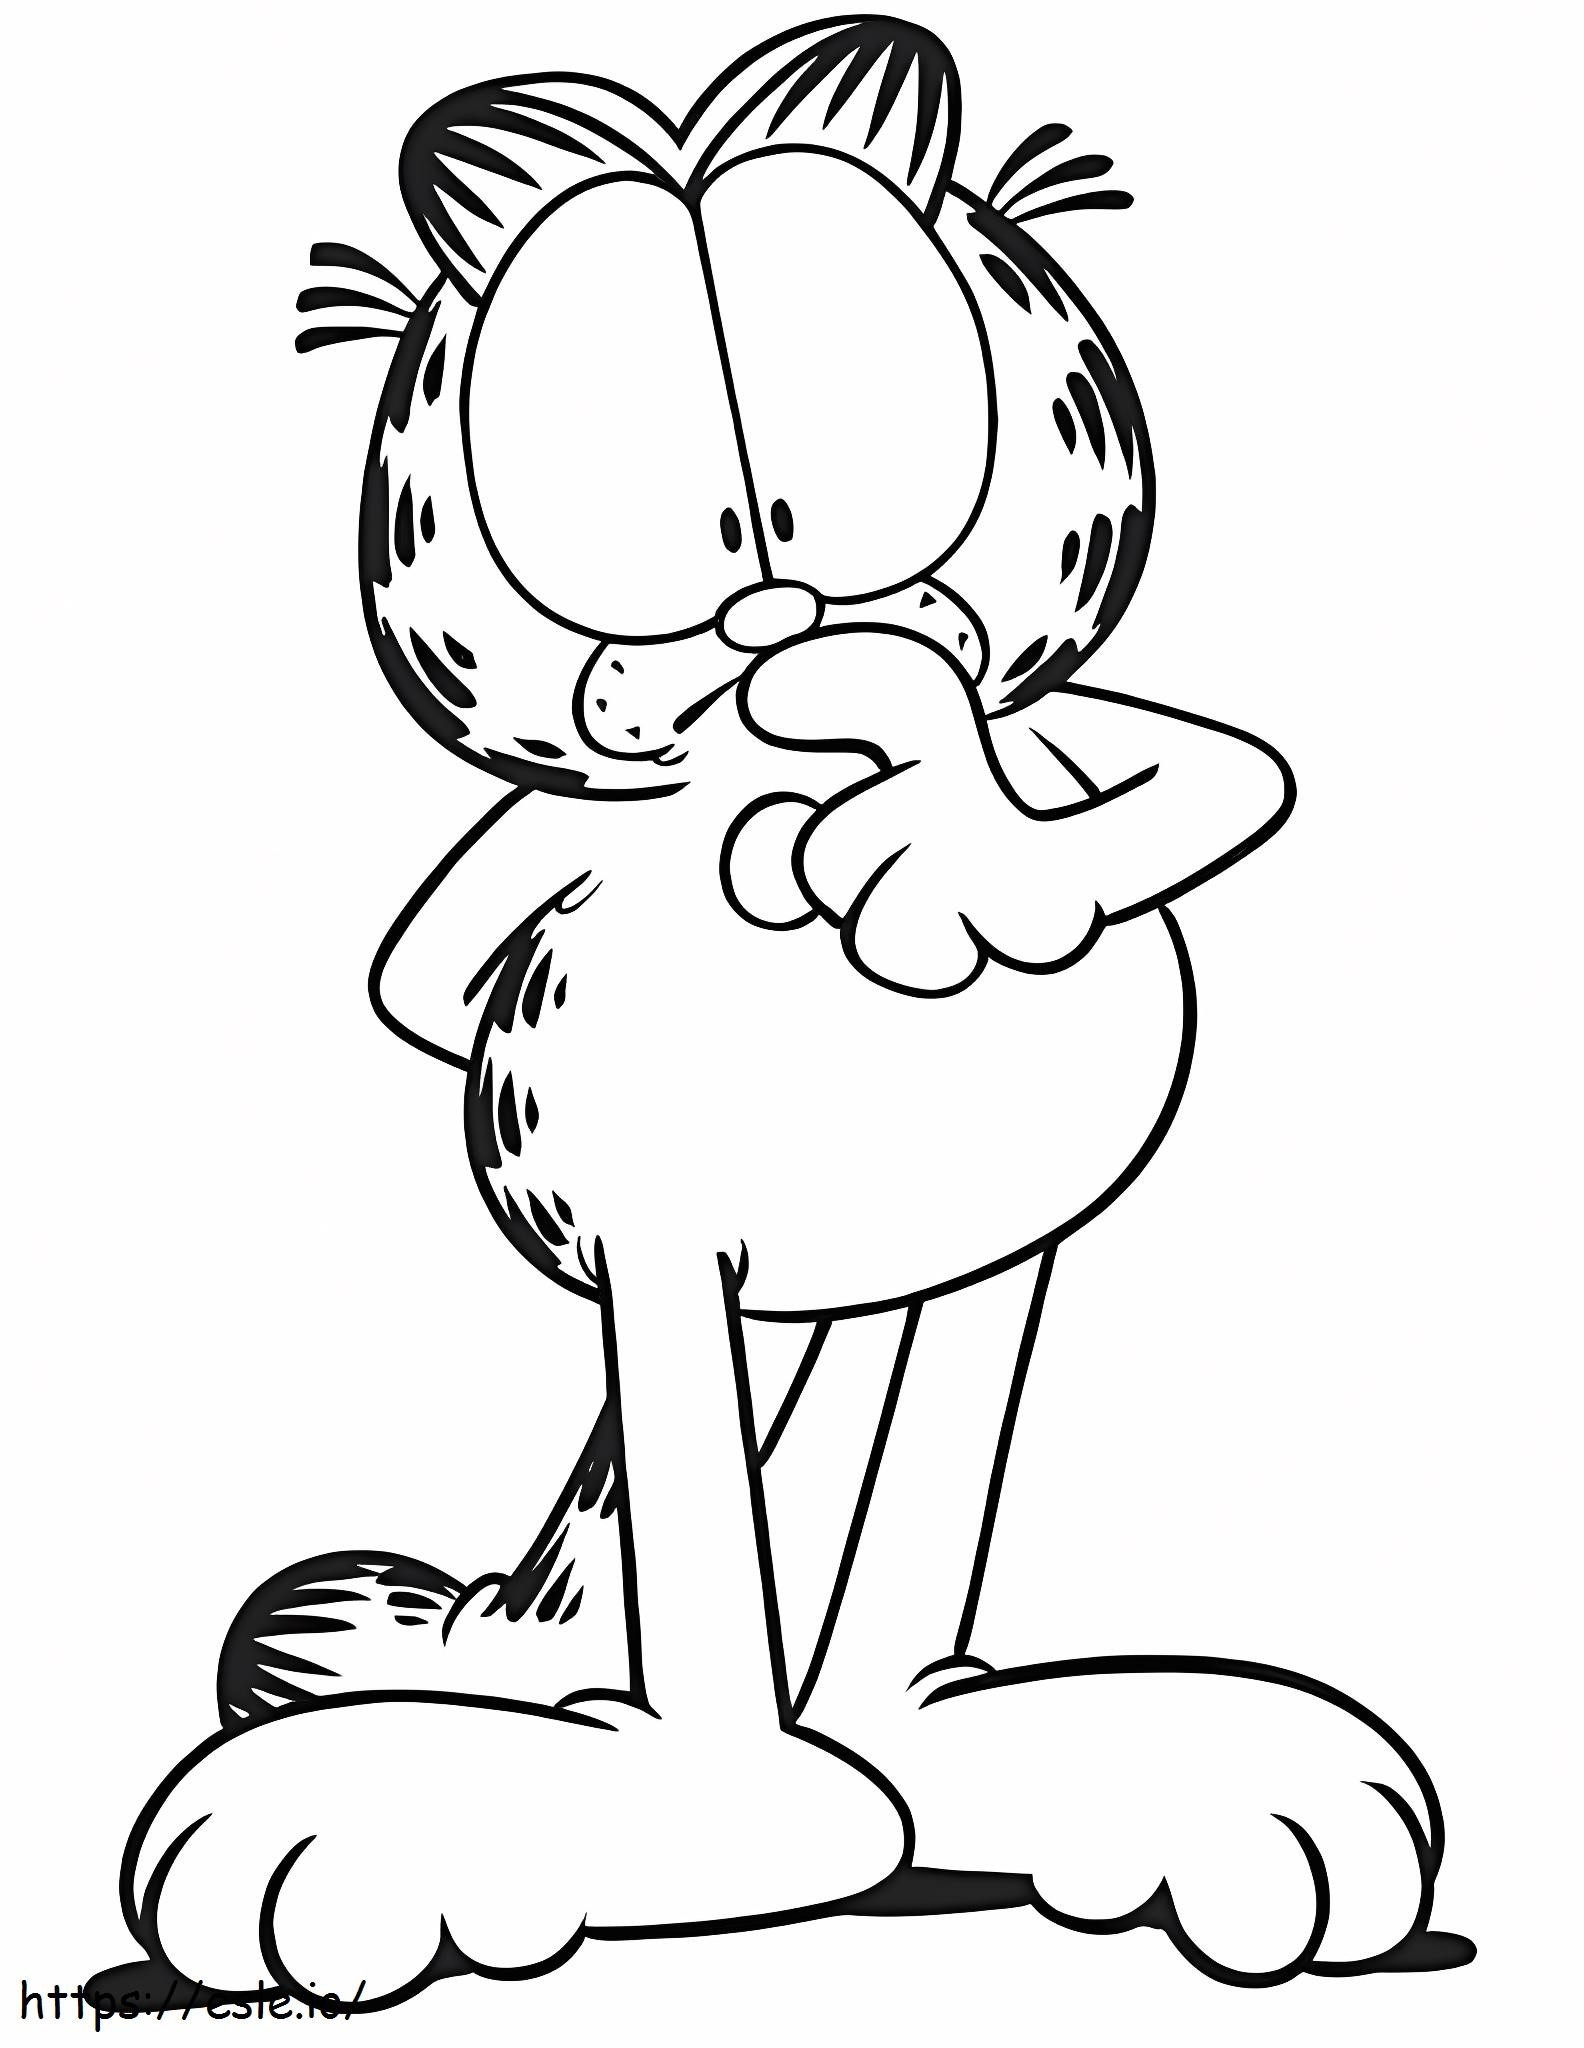 Garfield-gedachte kleurplaat kleurplaat